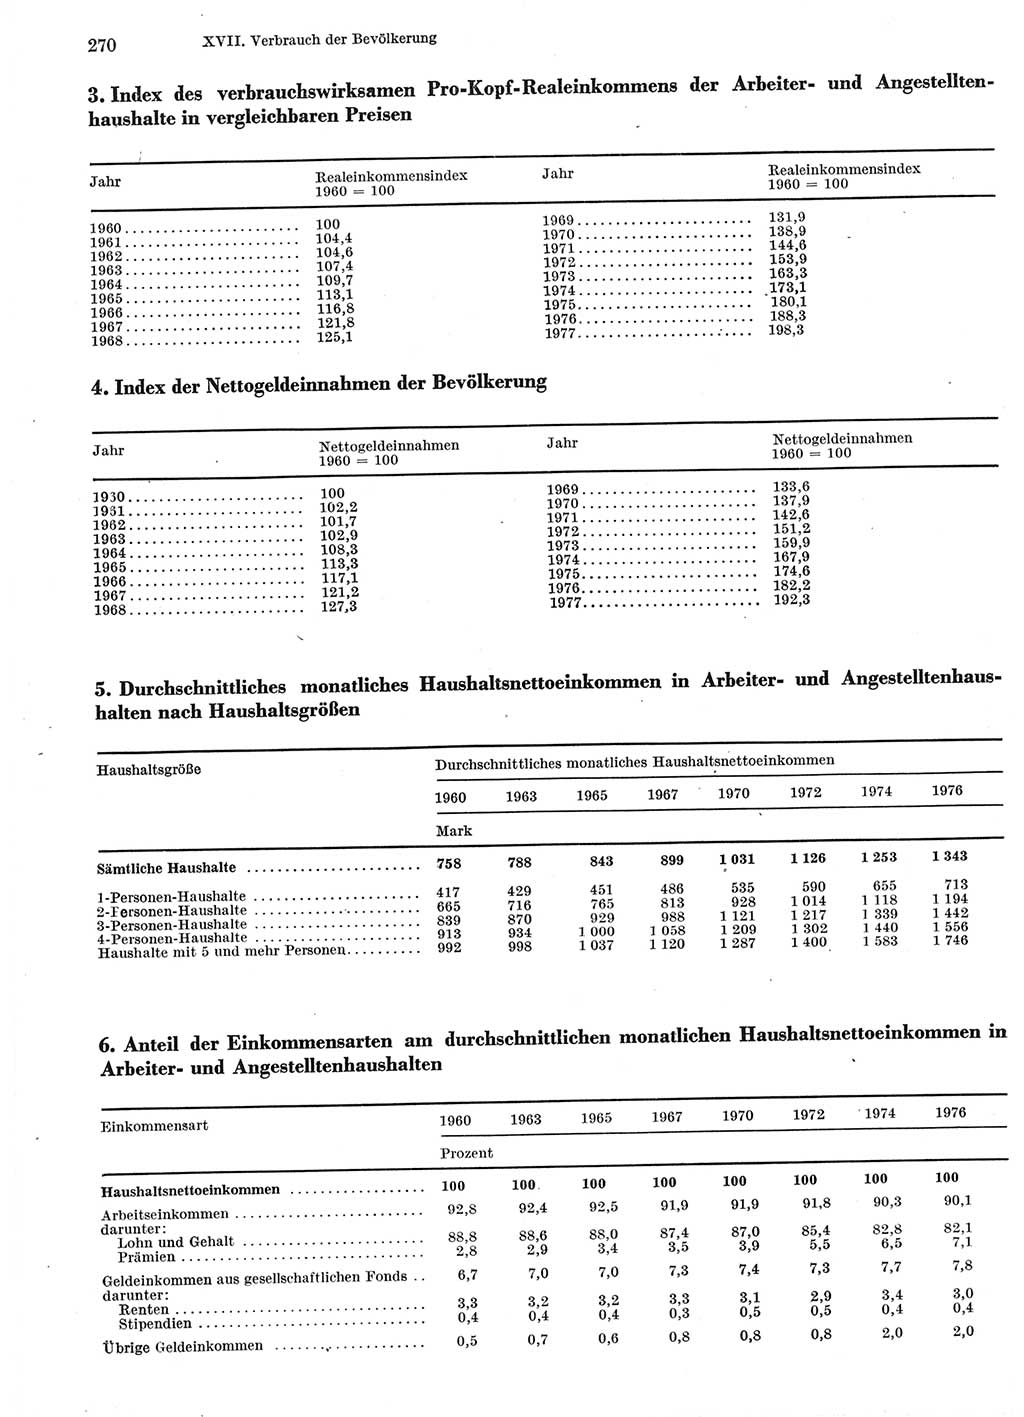 Statistisches Jahrbuch der Deutschen Demokratischen Republik (DDR) 1978, Seite 270 (Stat. Jb. DDR 1978, S. 270)